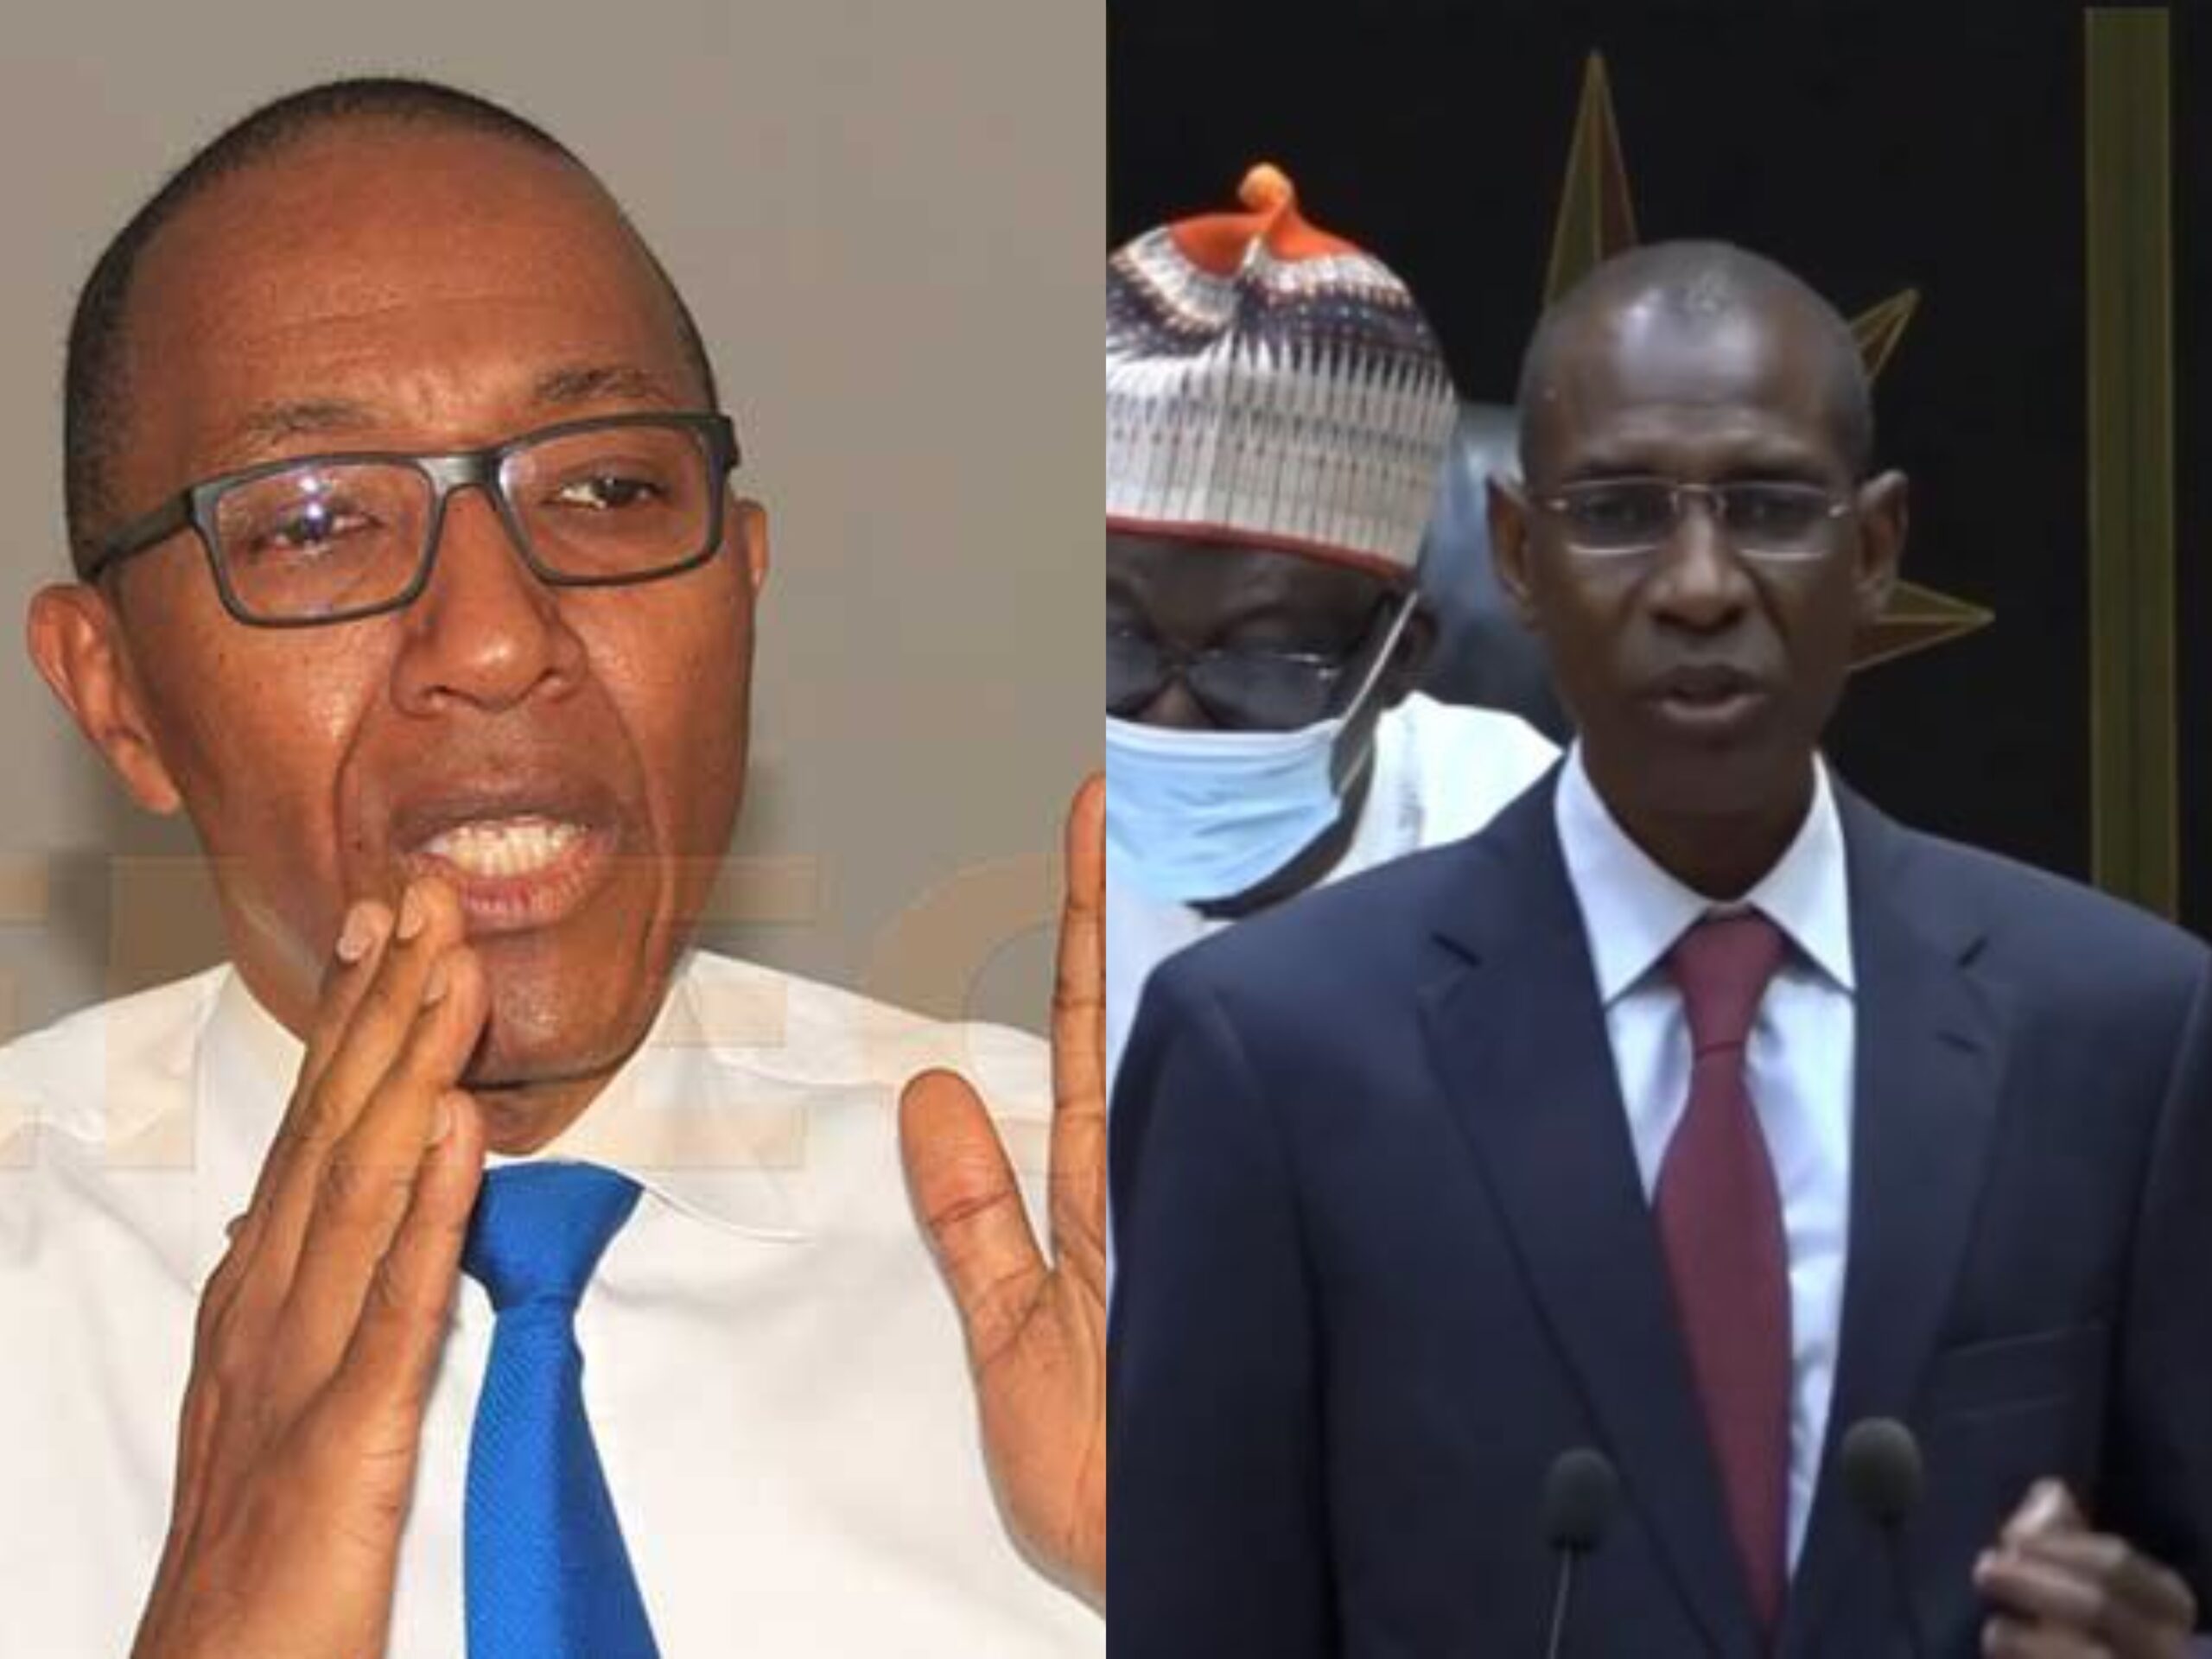 Augmentation du budget : Abdoul Mbaye alerte contre « une bamboula débridée »